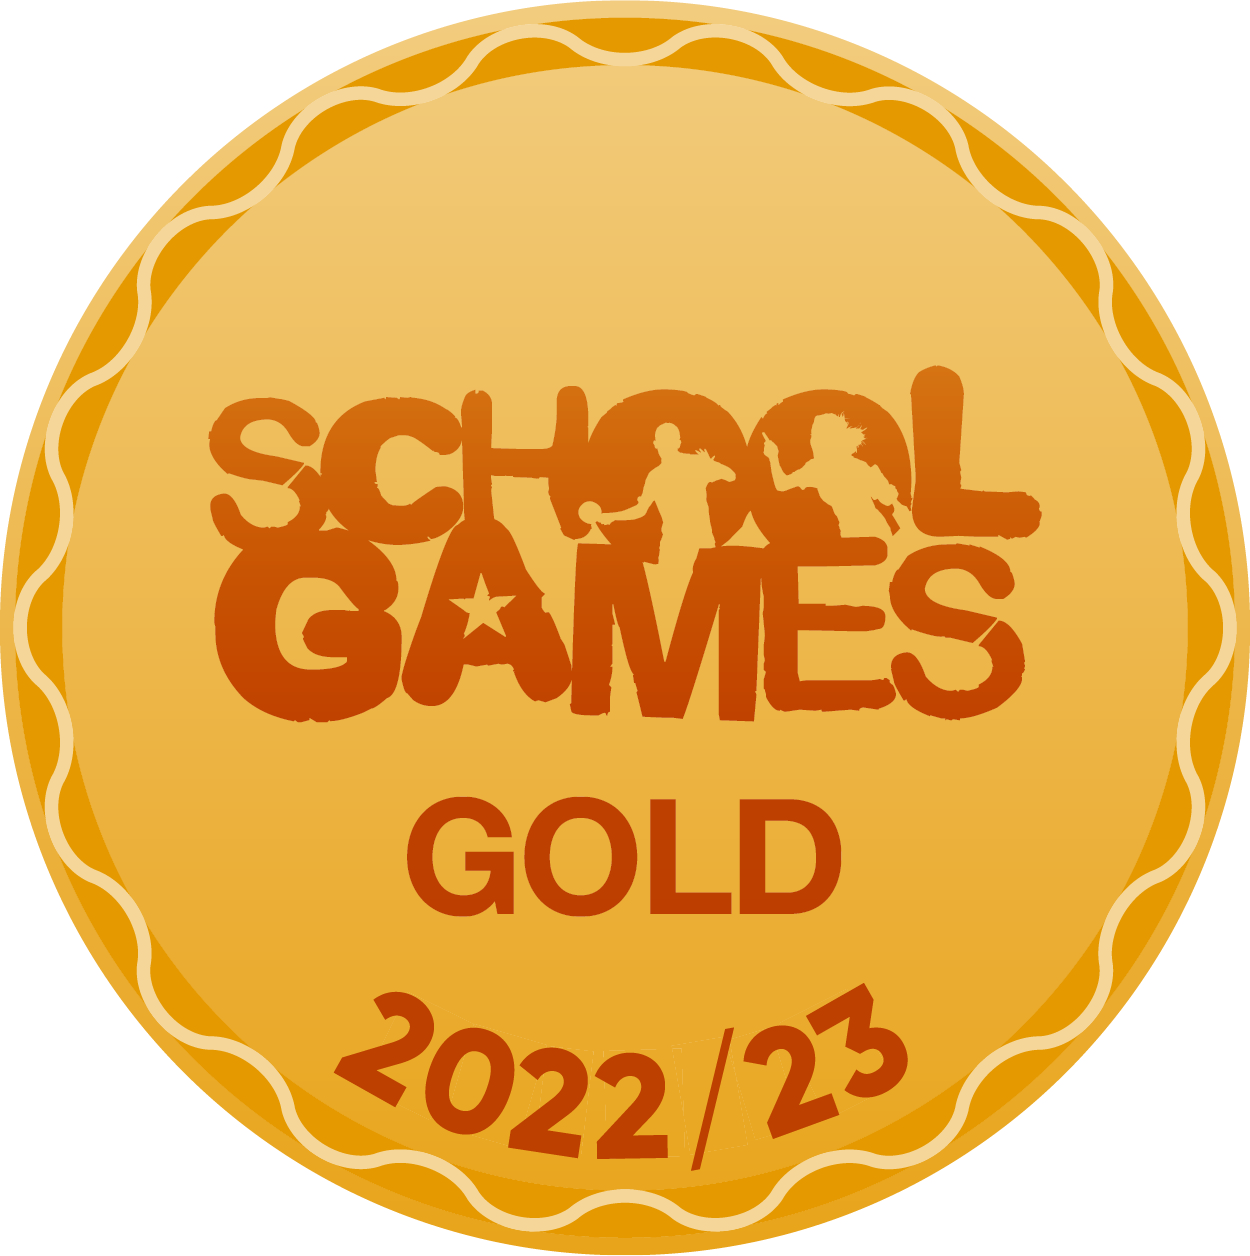 School Games Gold Badge